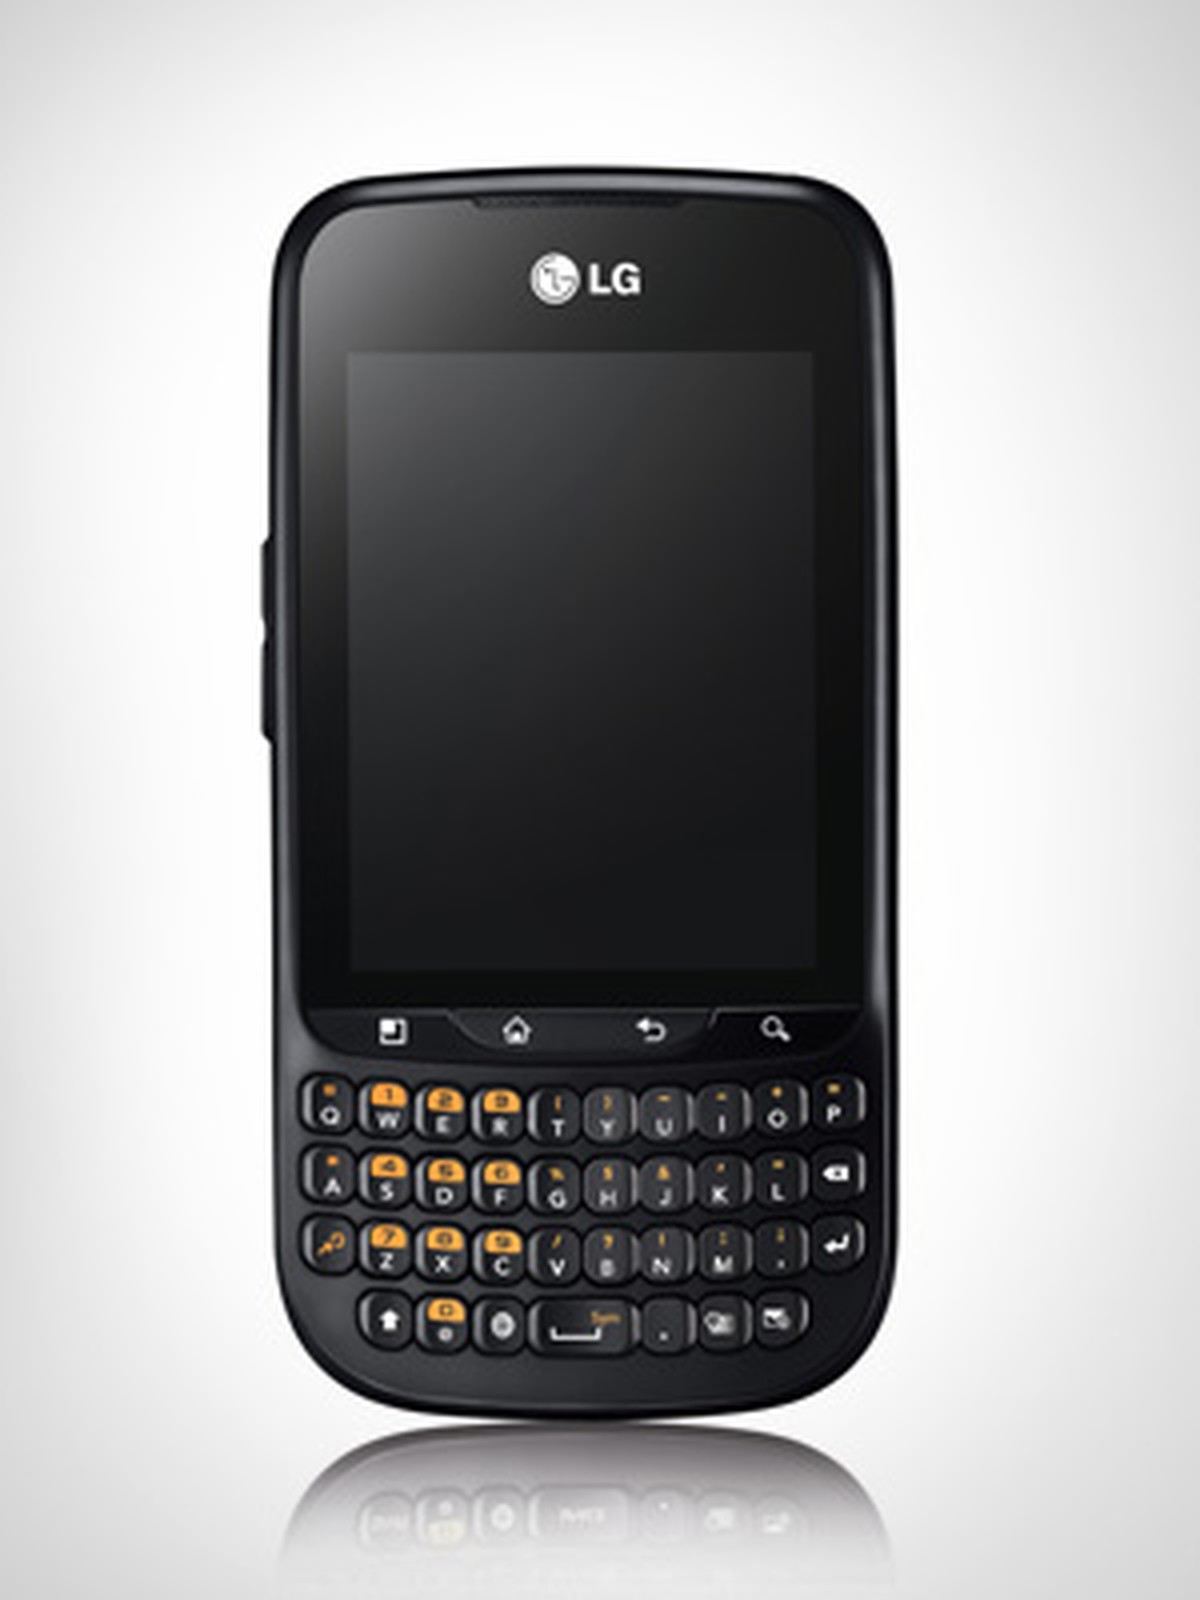 Смартфон LG Optimus Pro c660. LG С кверти клавиатурой. Кнопочный смартфон на андроиде. Смартфон с кнопочной клавиатурой и сенсорным. Кнопочный без андроид